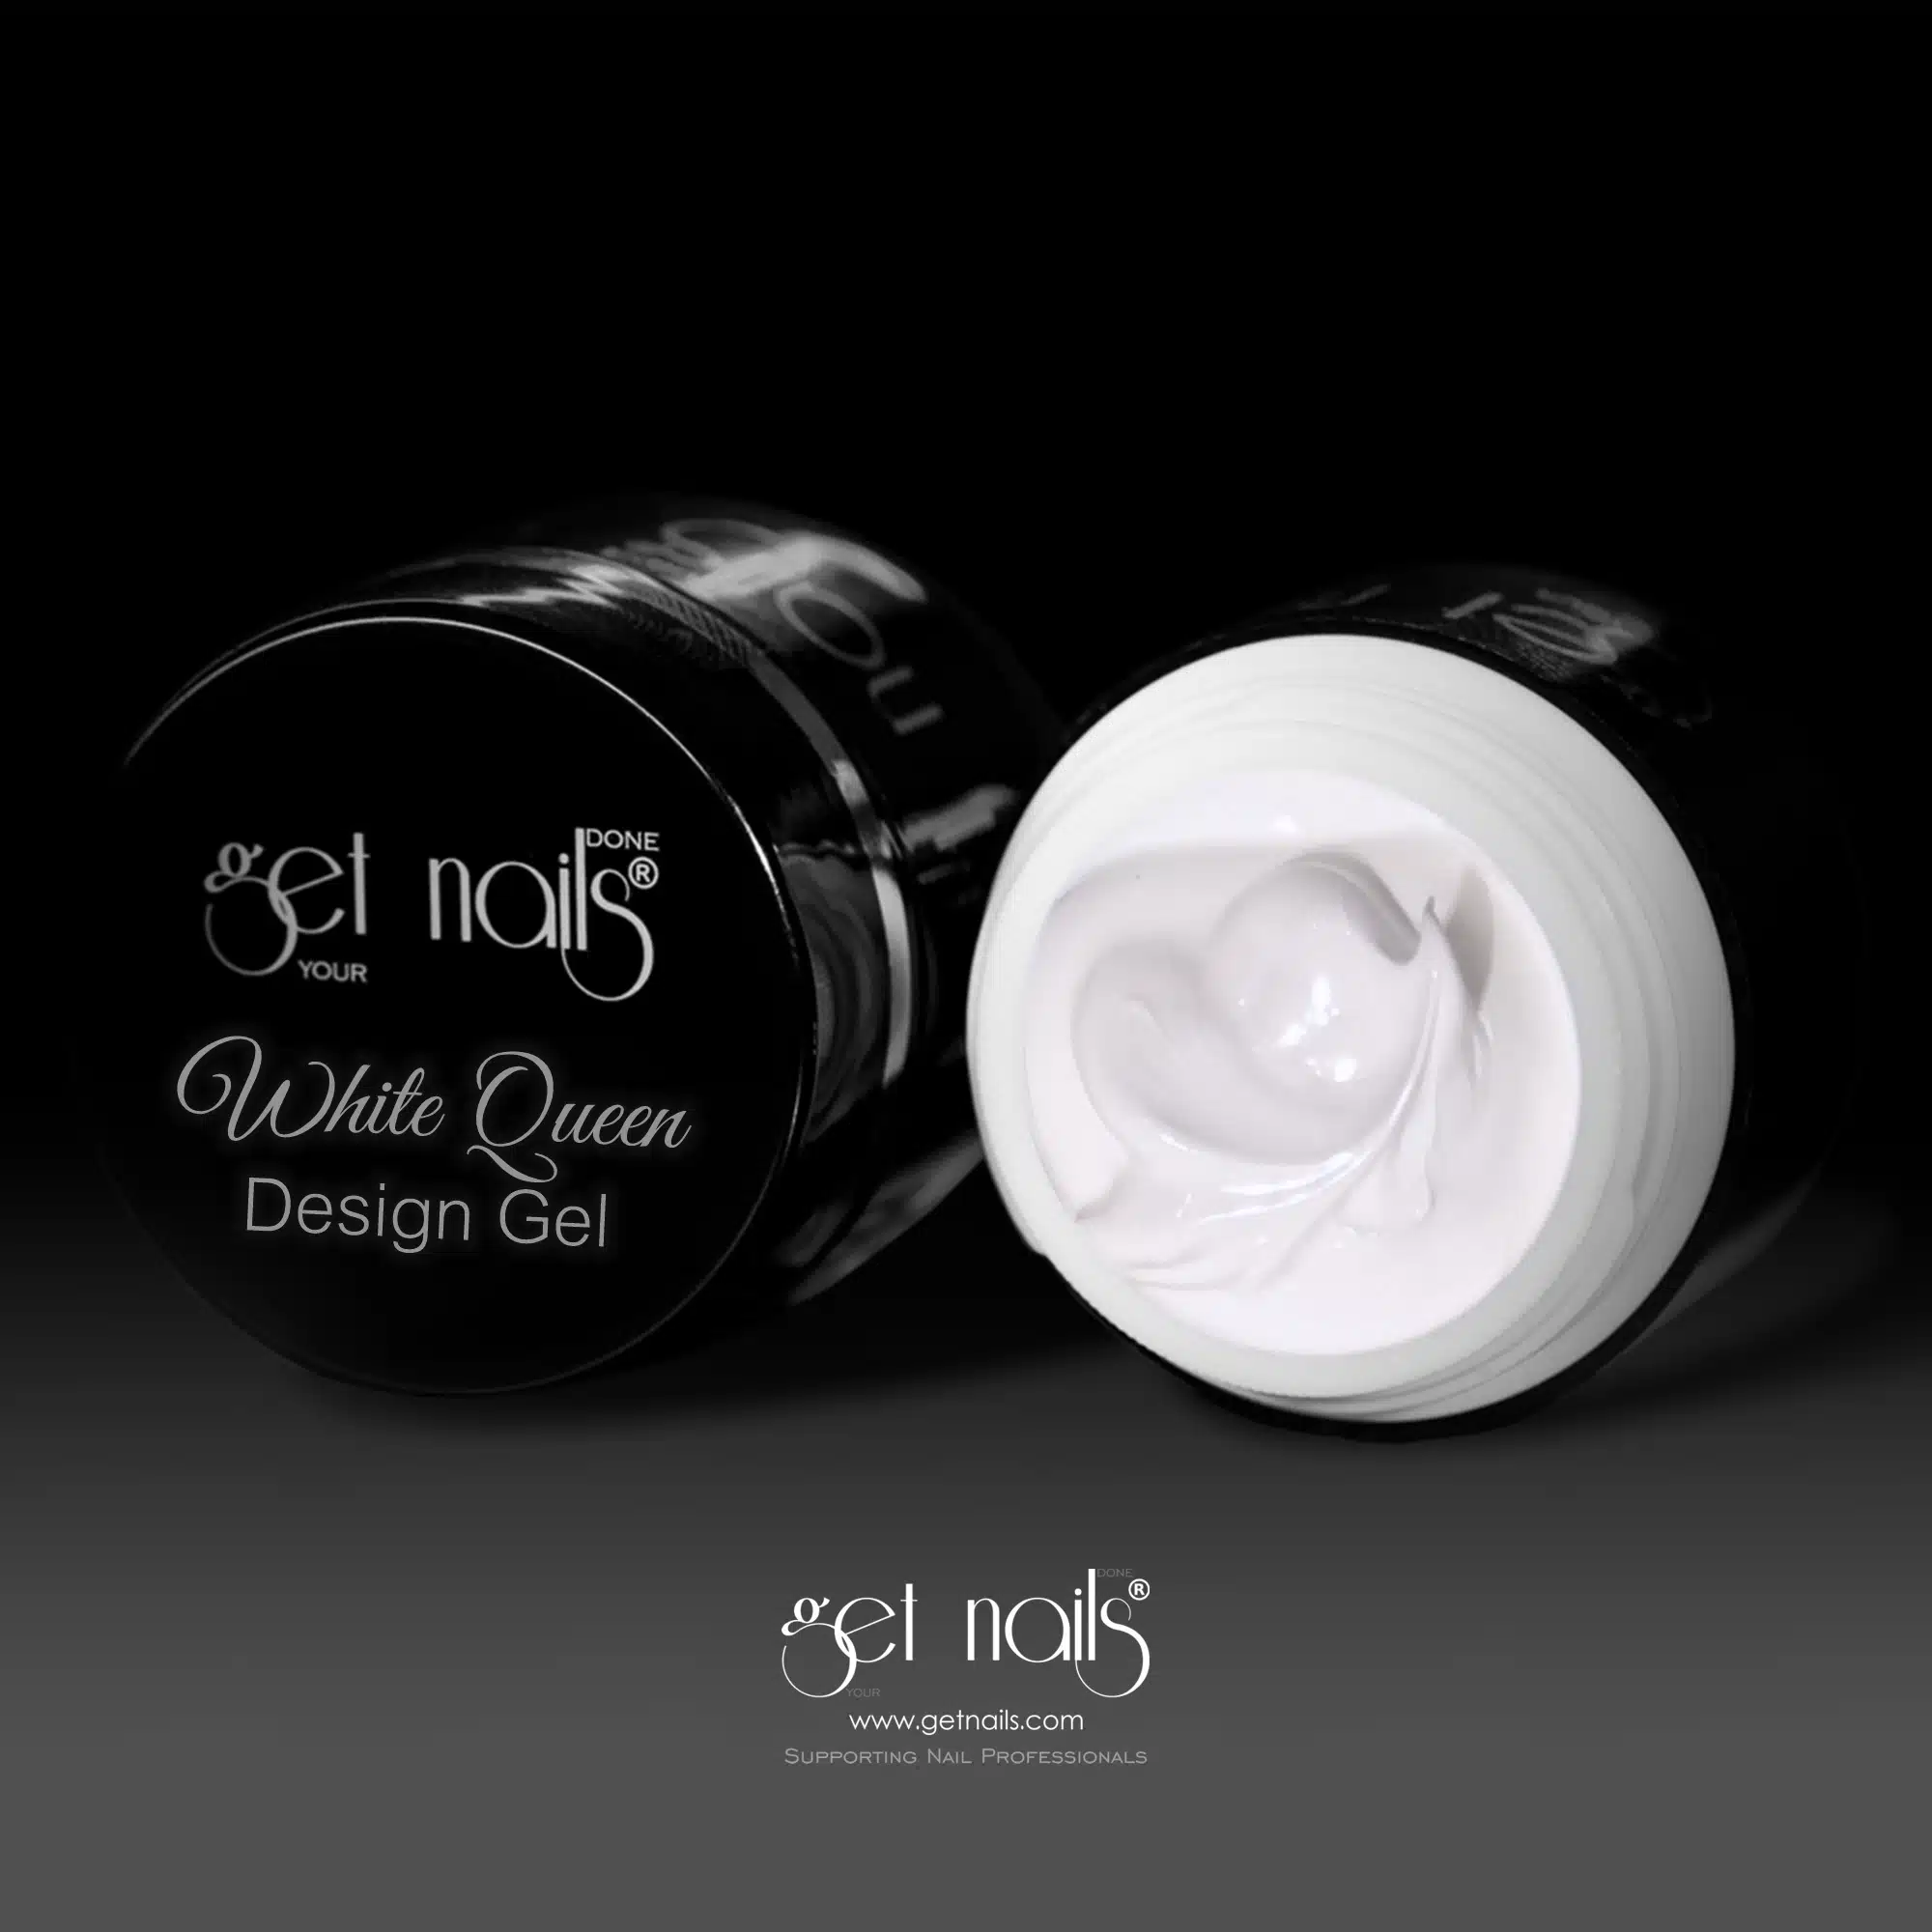 Get Nails Austria - White Queen Design Gel 5g